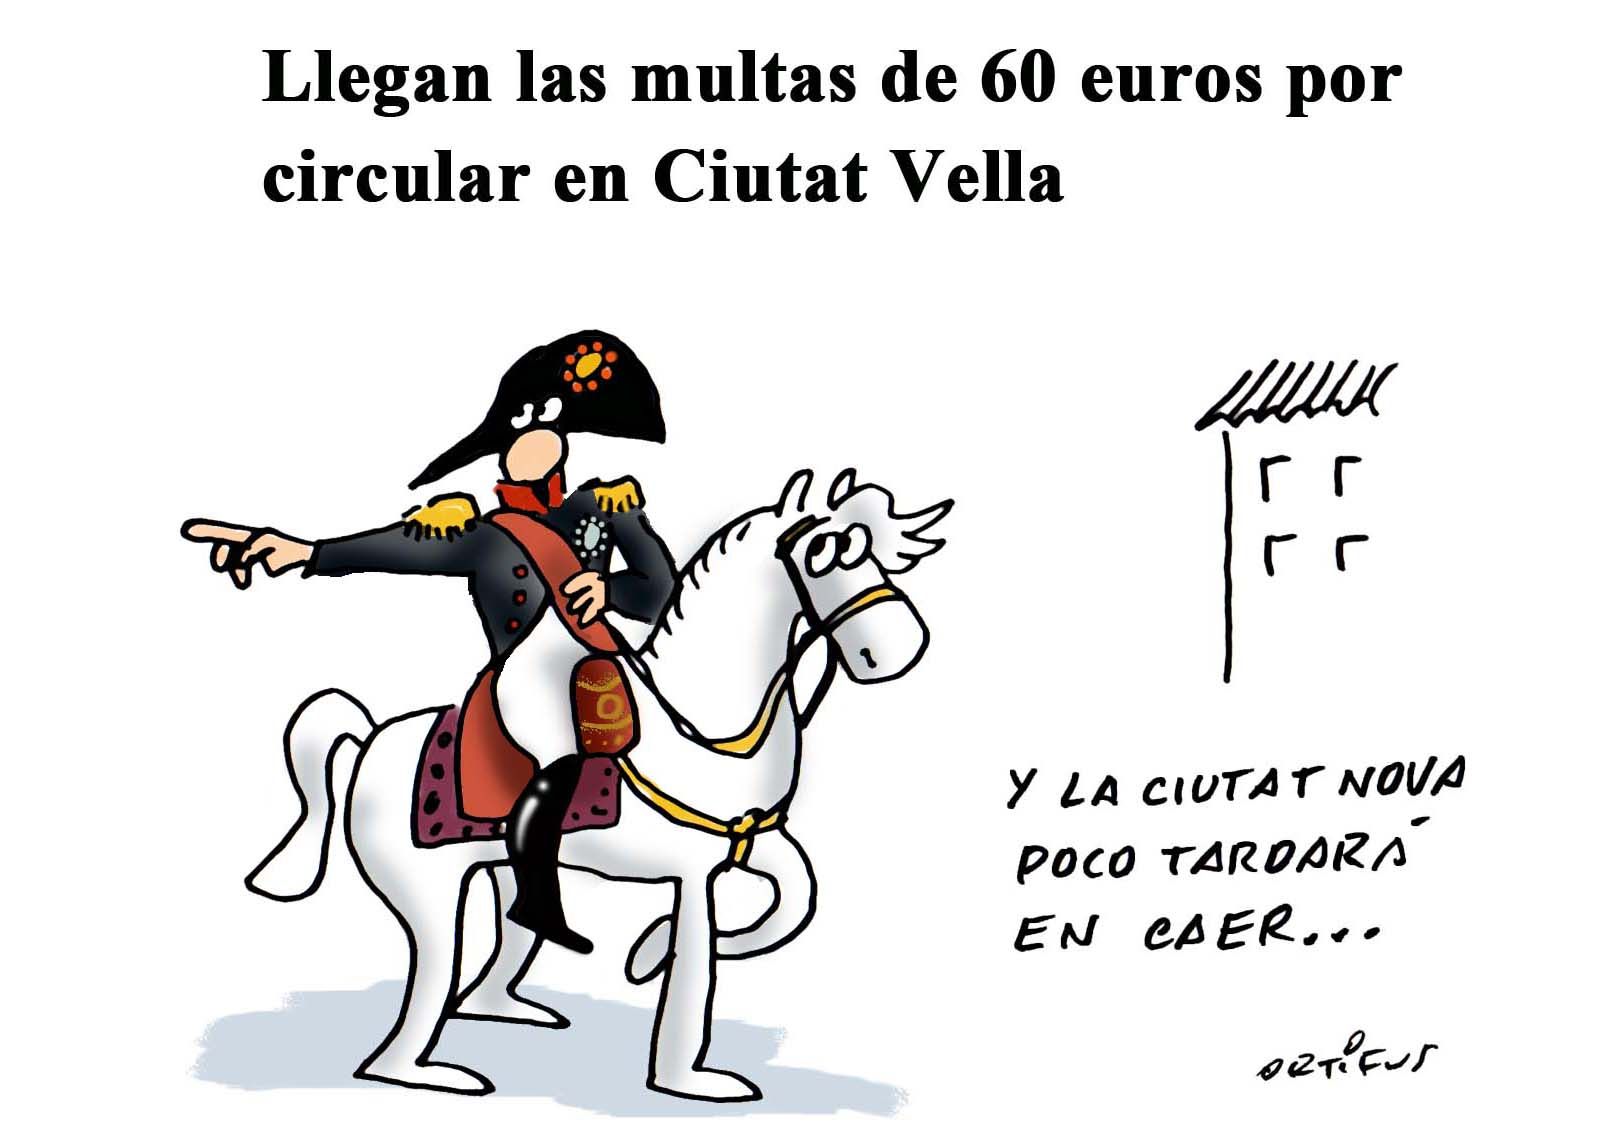 Llegan las multas de 60 euros por circular en Ciutat Vella